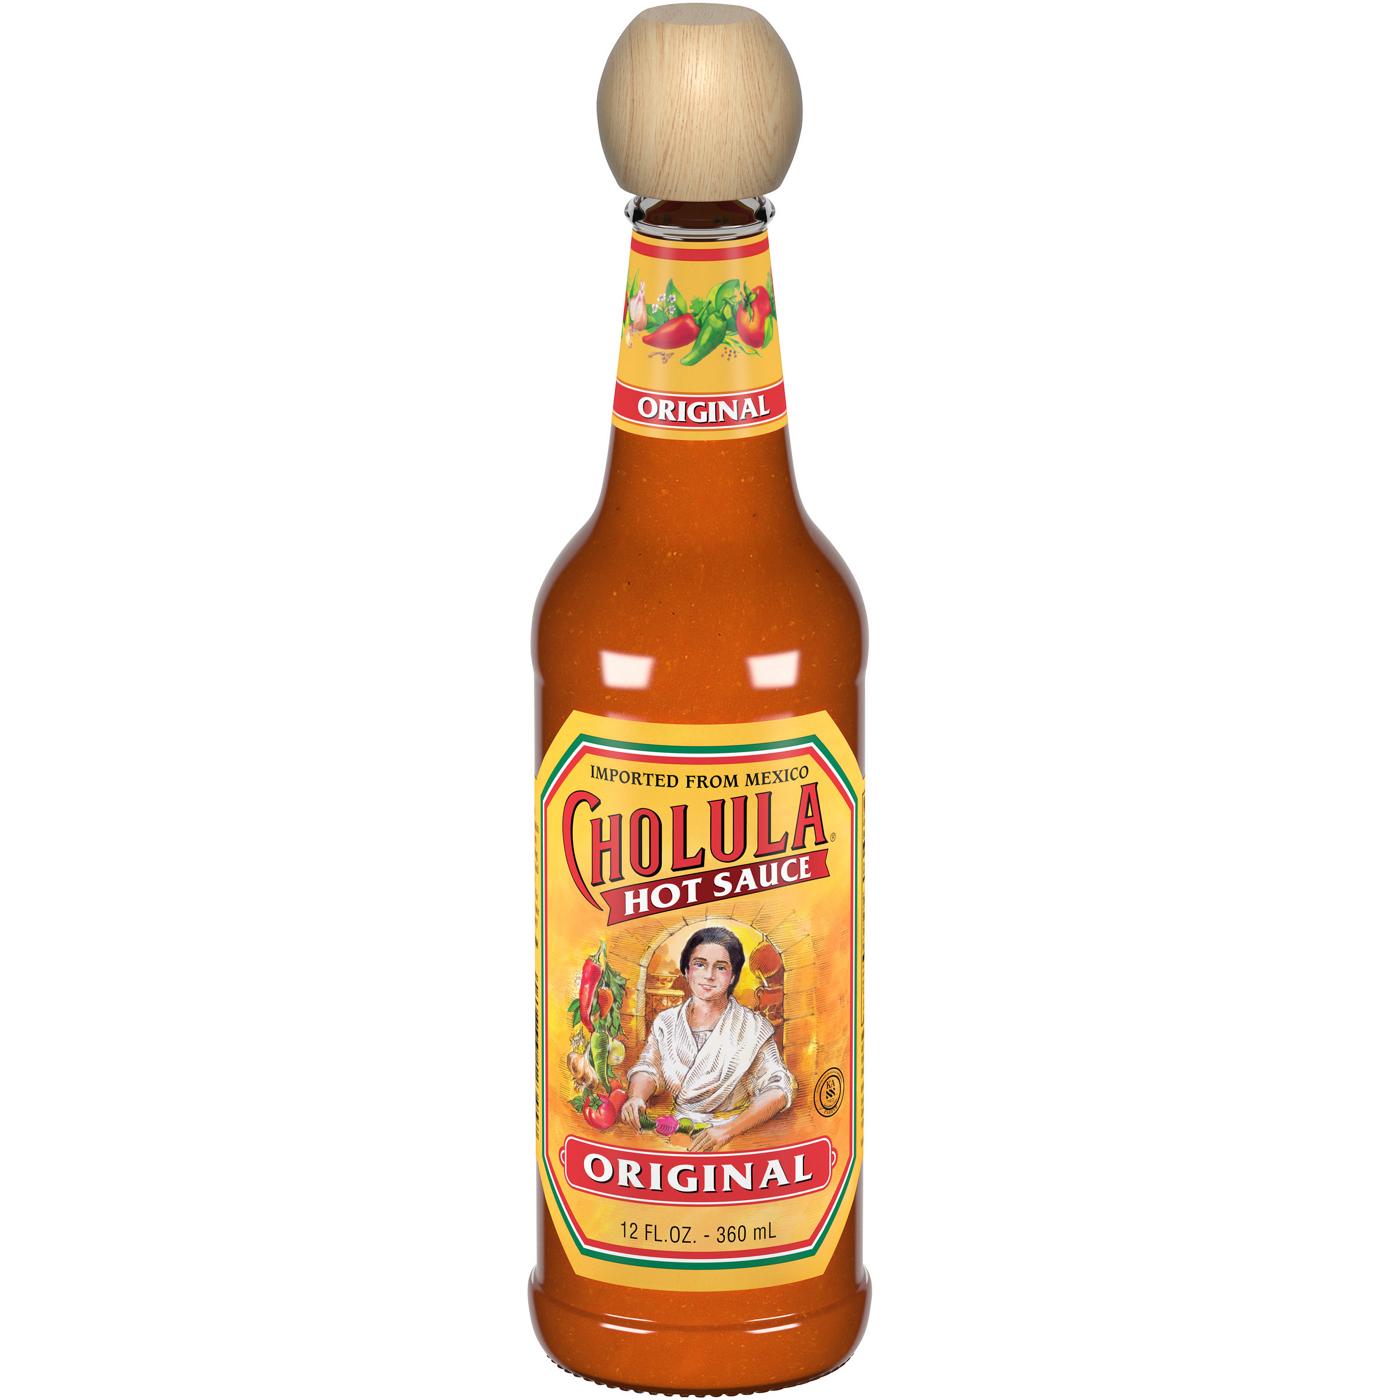 Cholula Original Hot Sauce; image 1 of 8